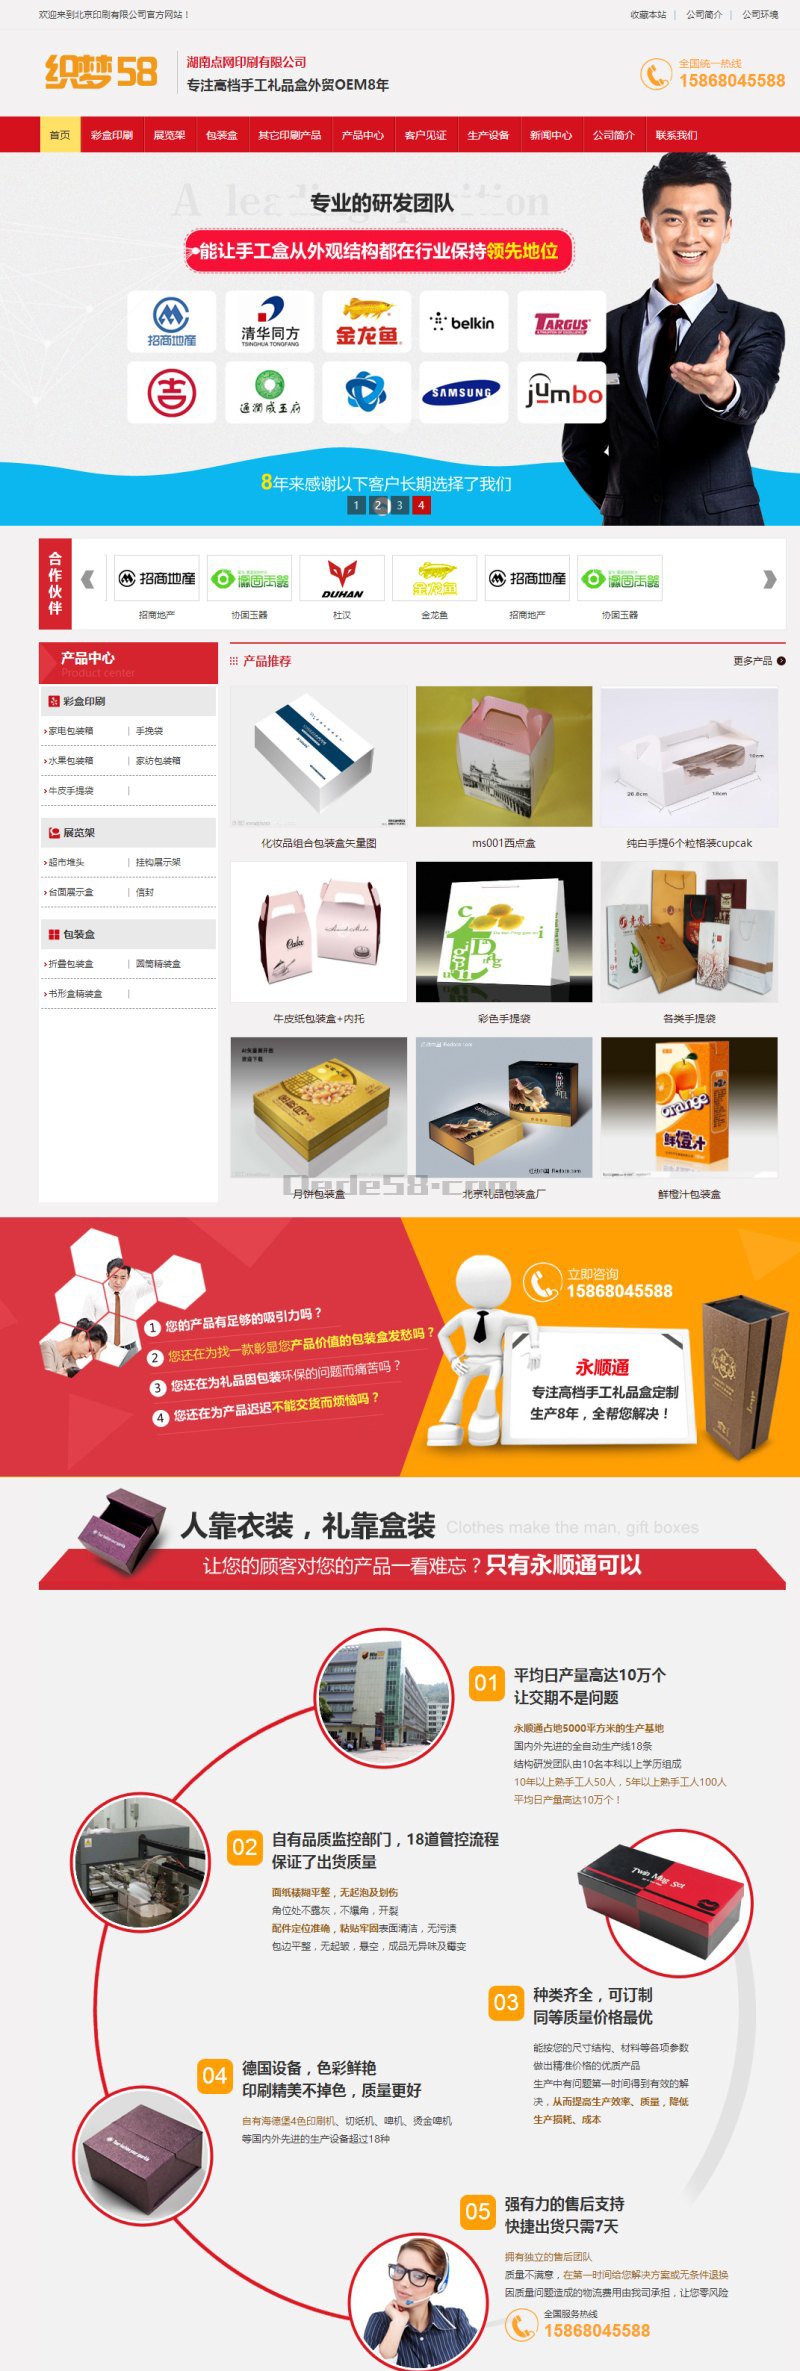 [织梦模板]营销型印刷品包装企业网站模板(带手机端)